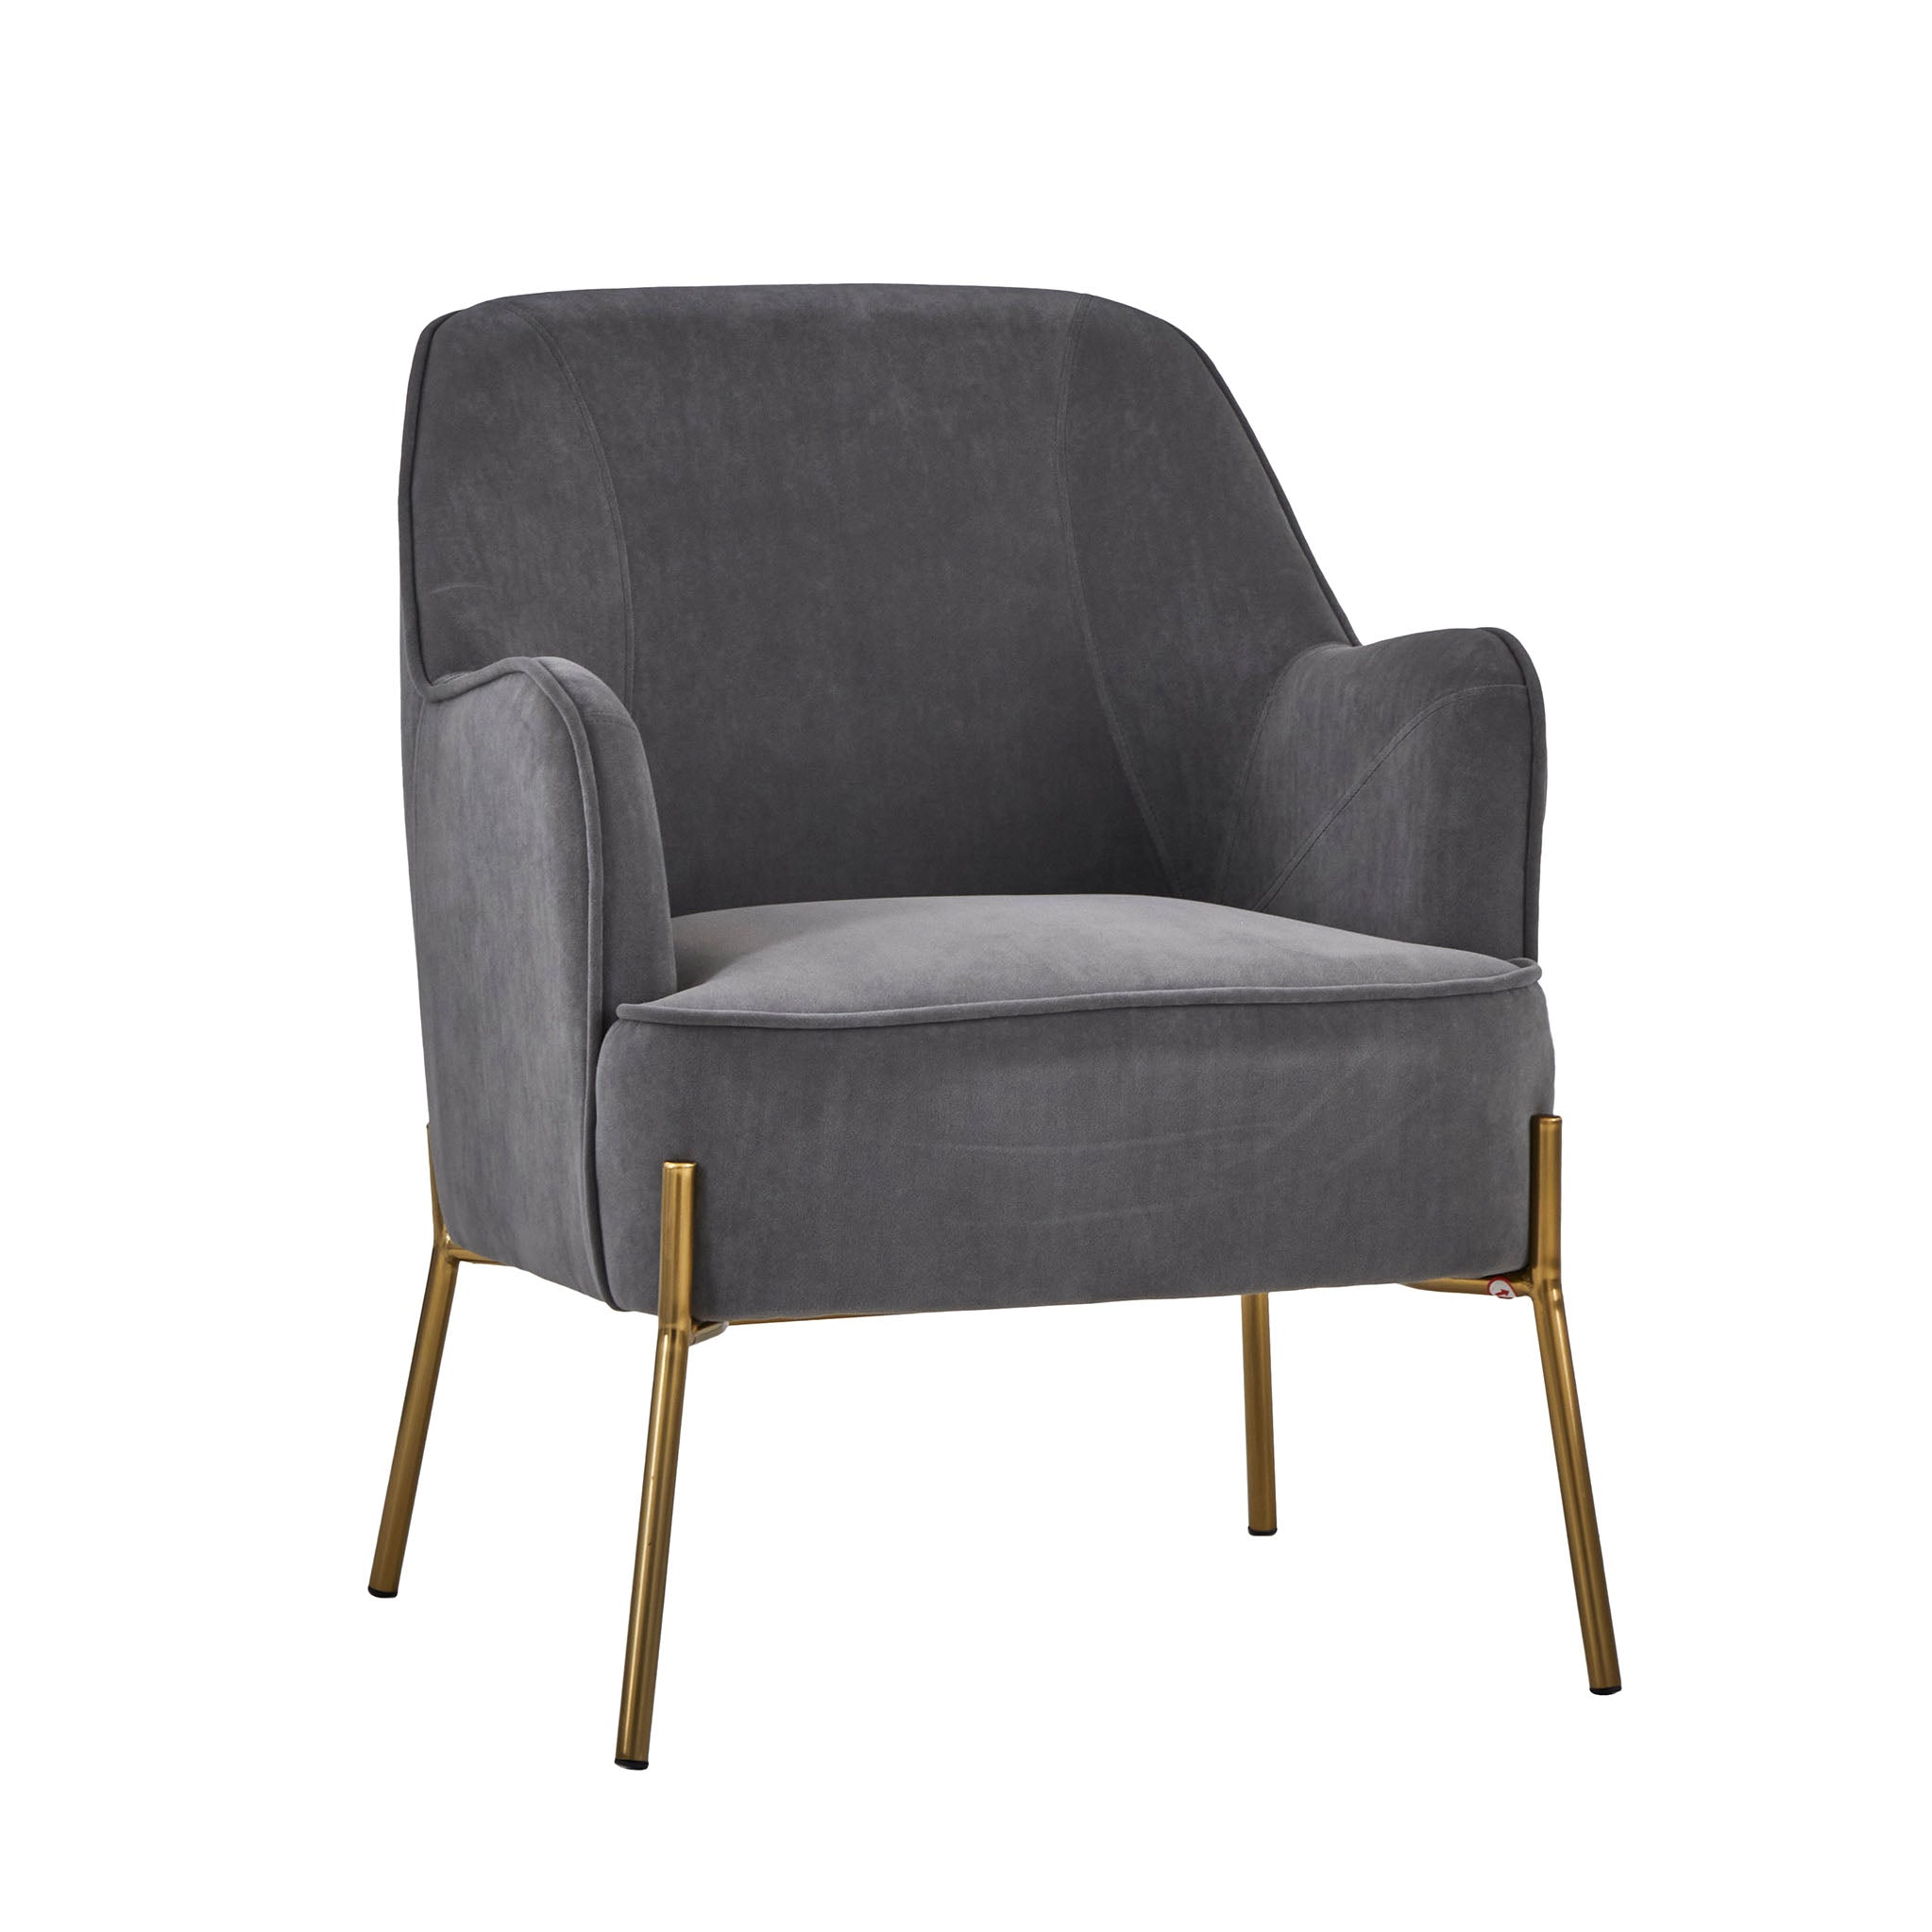 Delphine Glamorous Velvet Padded Accent Chair For Living Room Or Bedroom